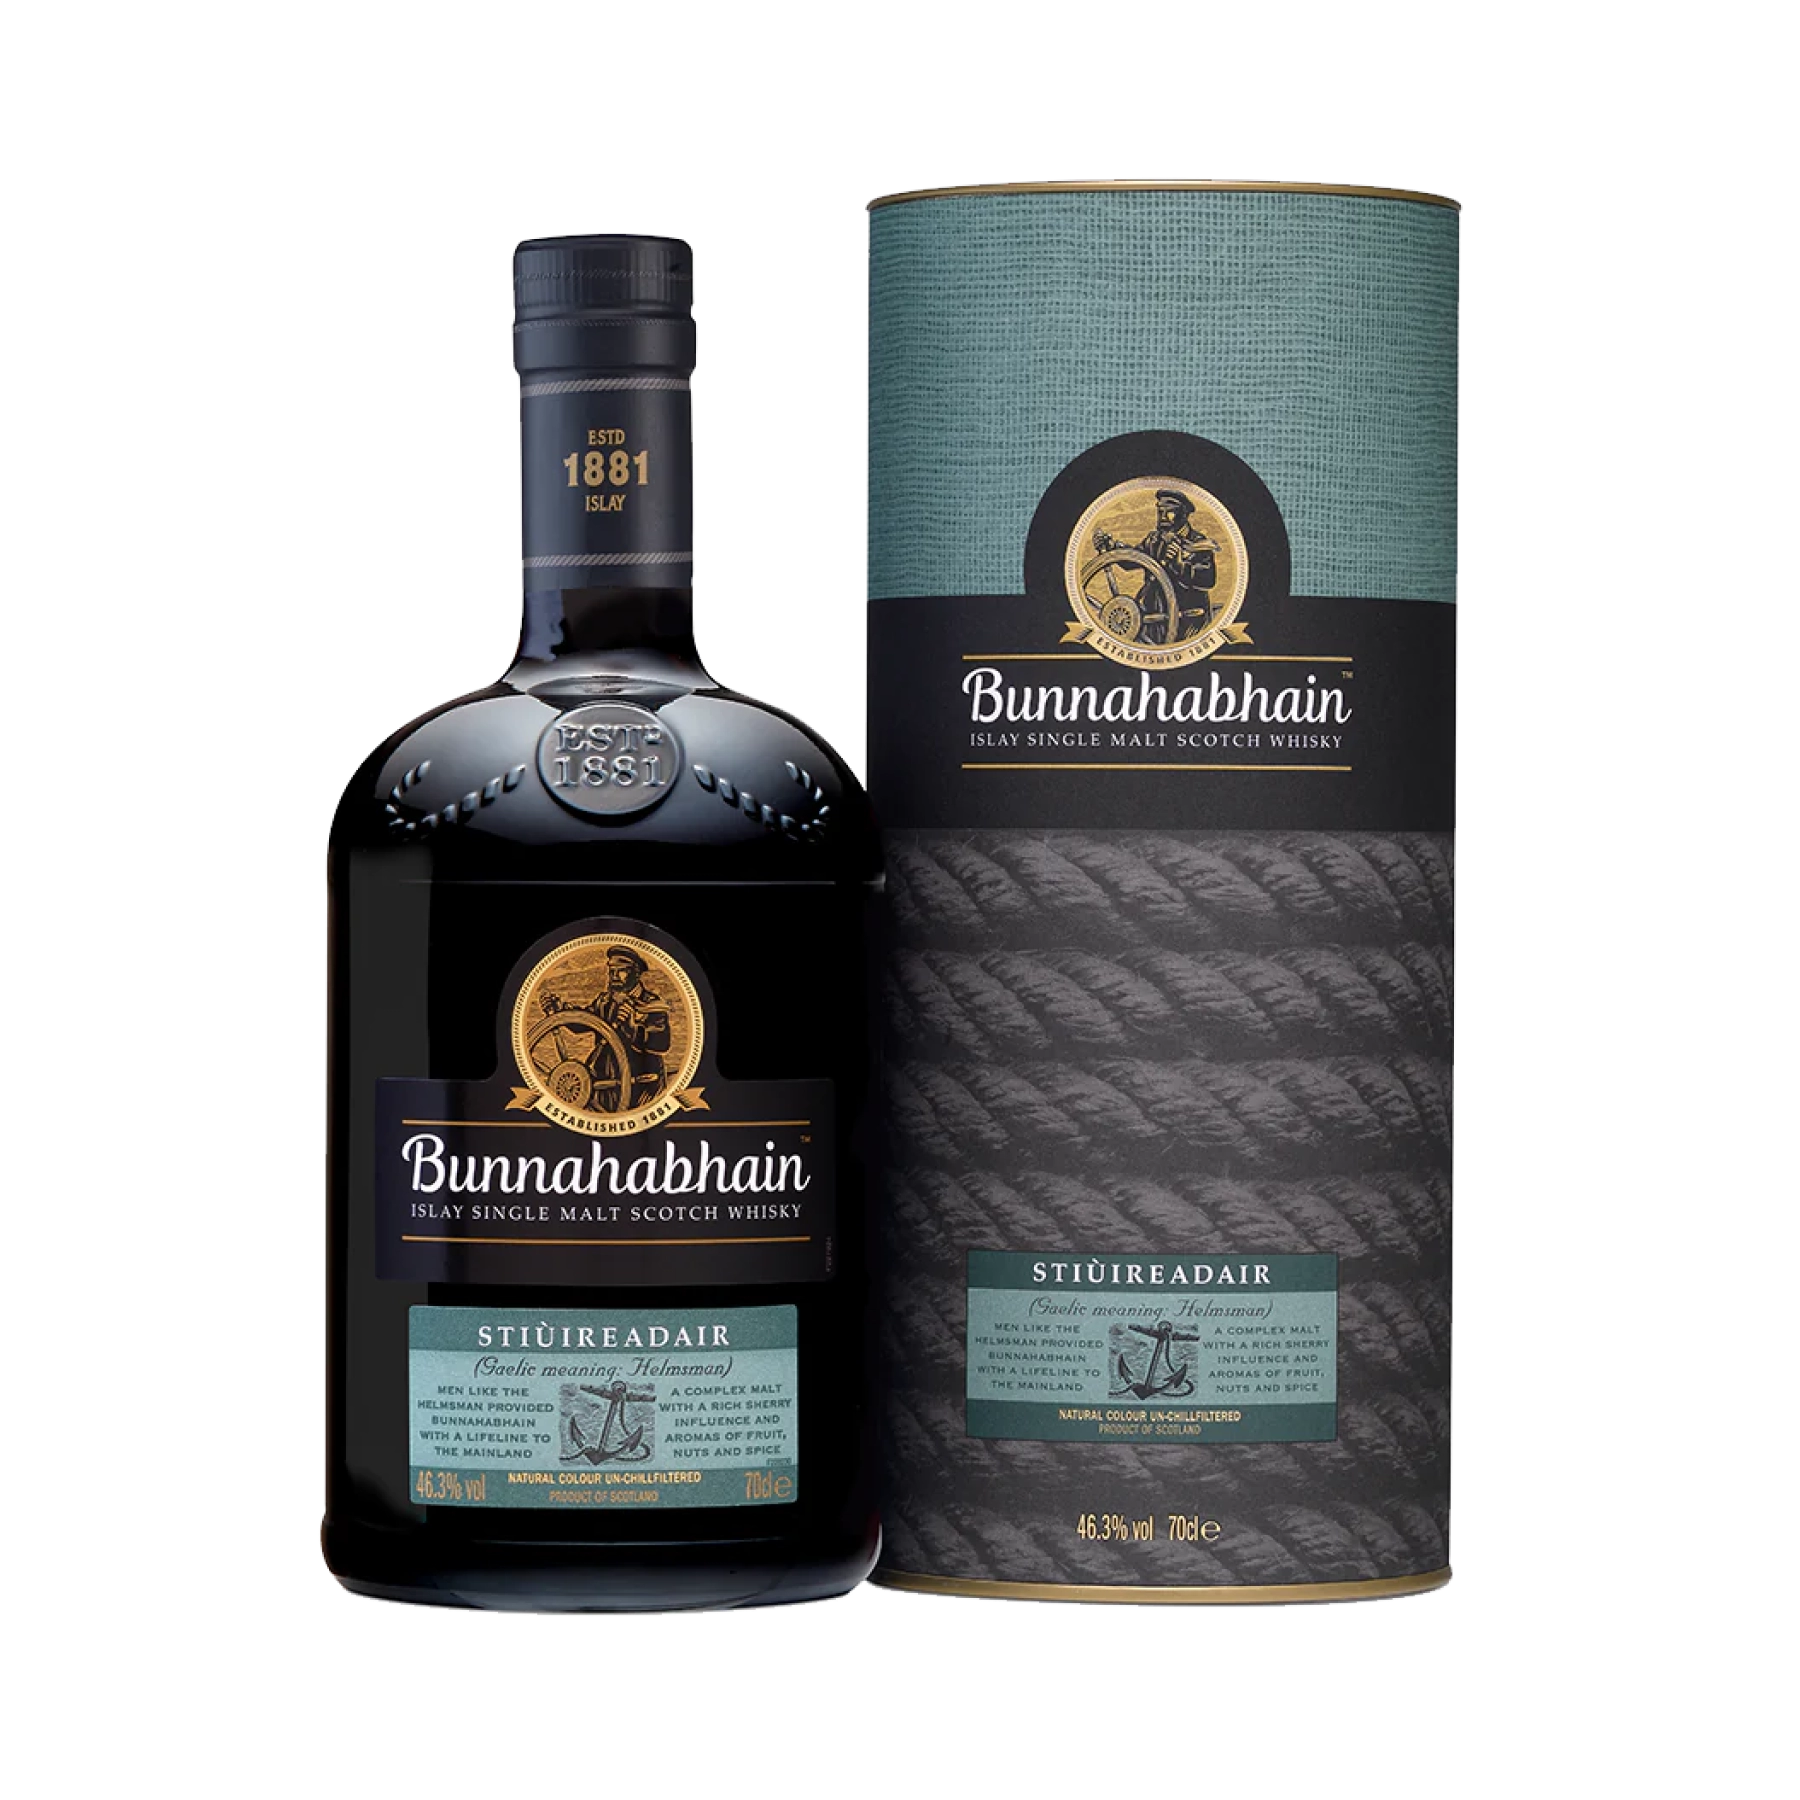 Rượu Whisky Bunnahabhain Stiuireadair